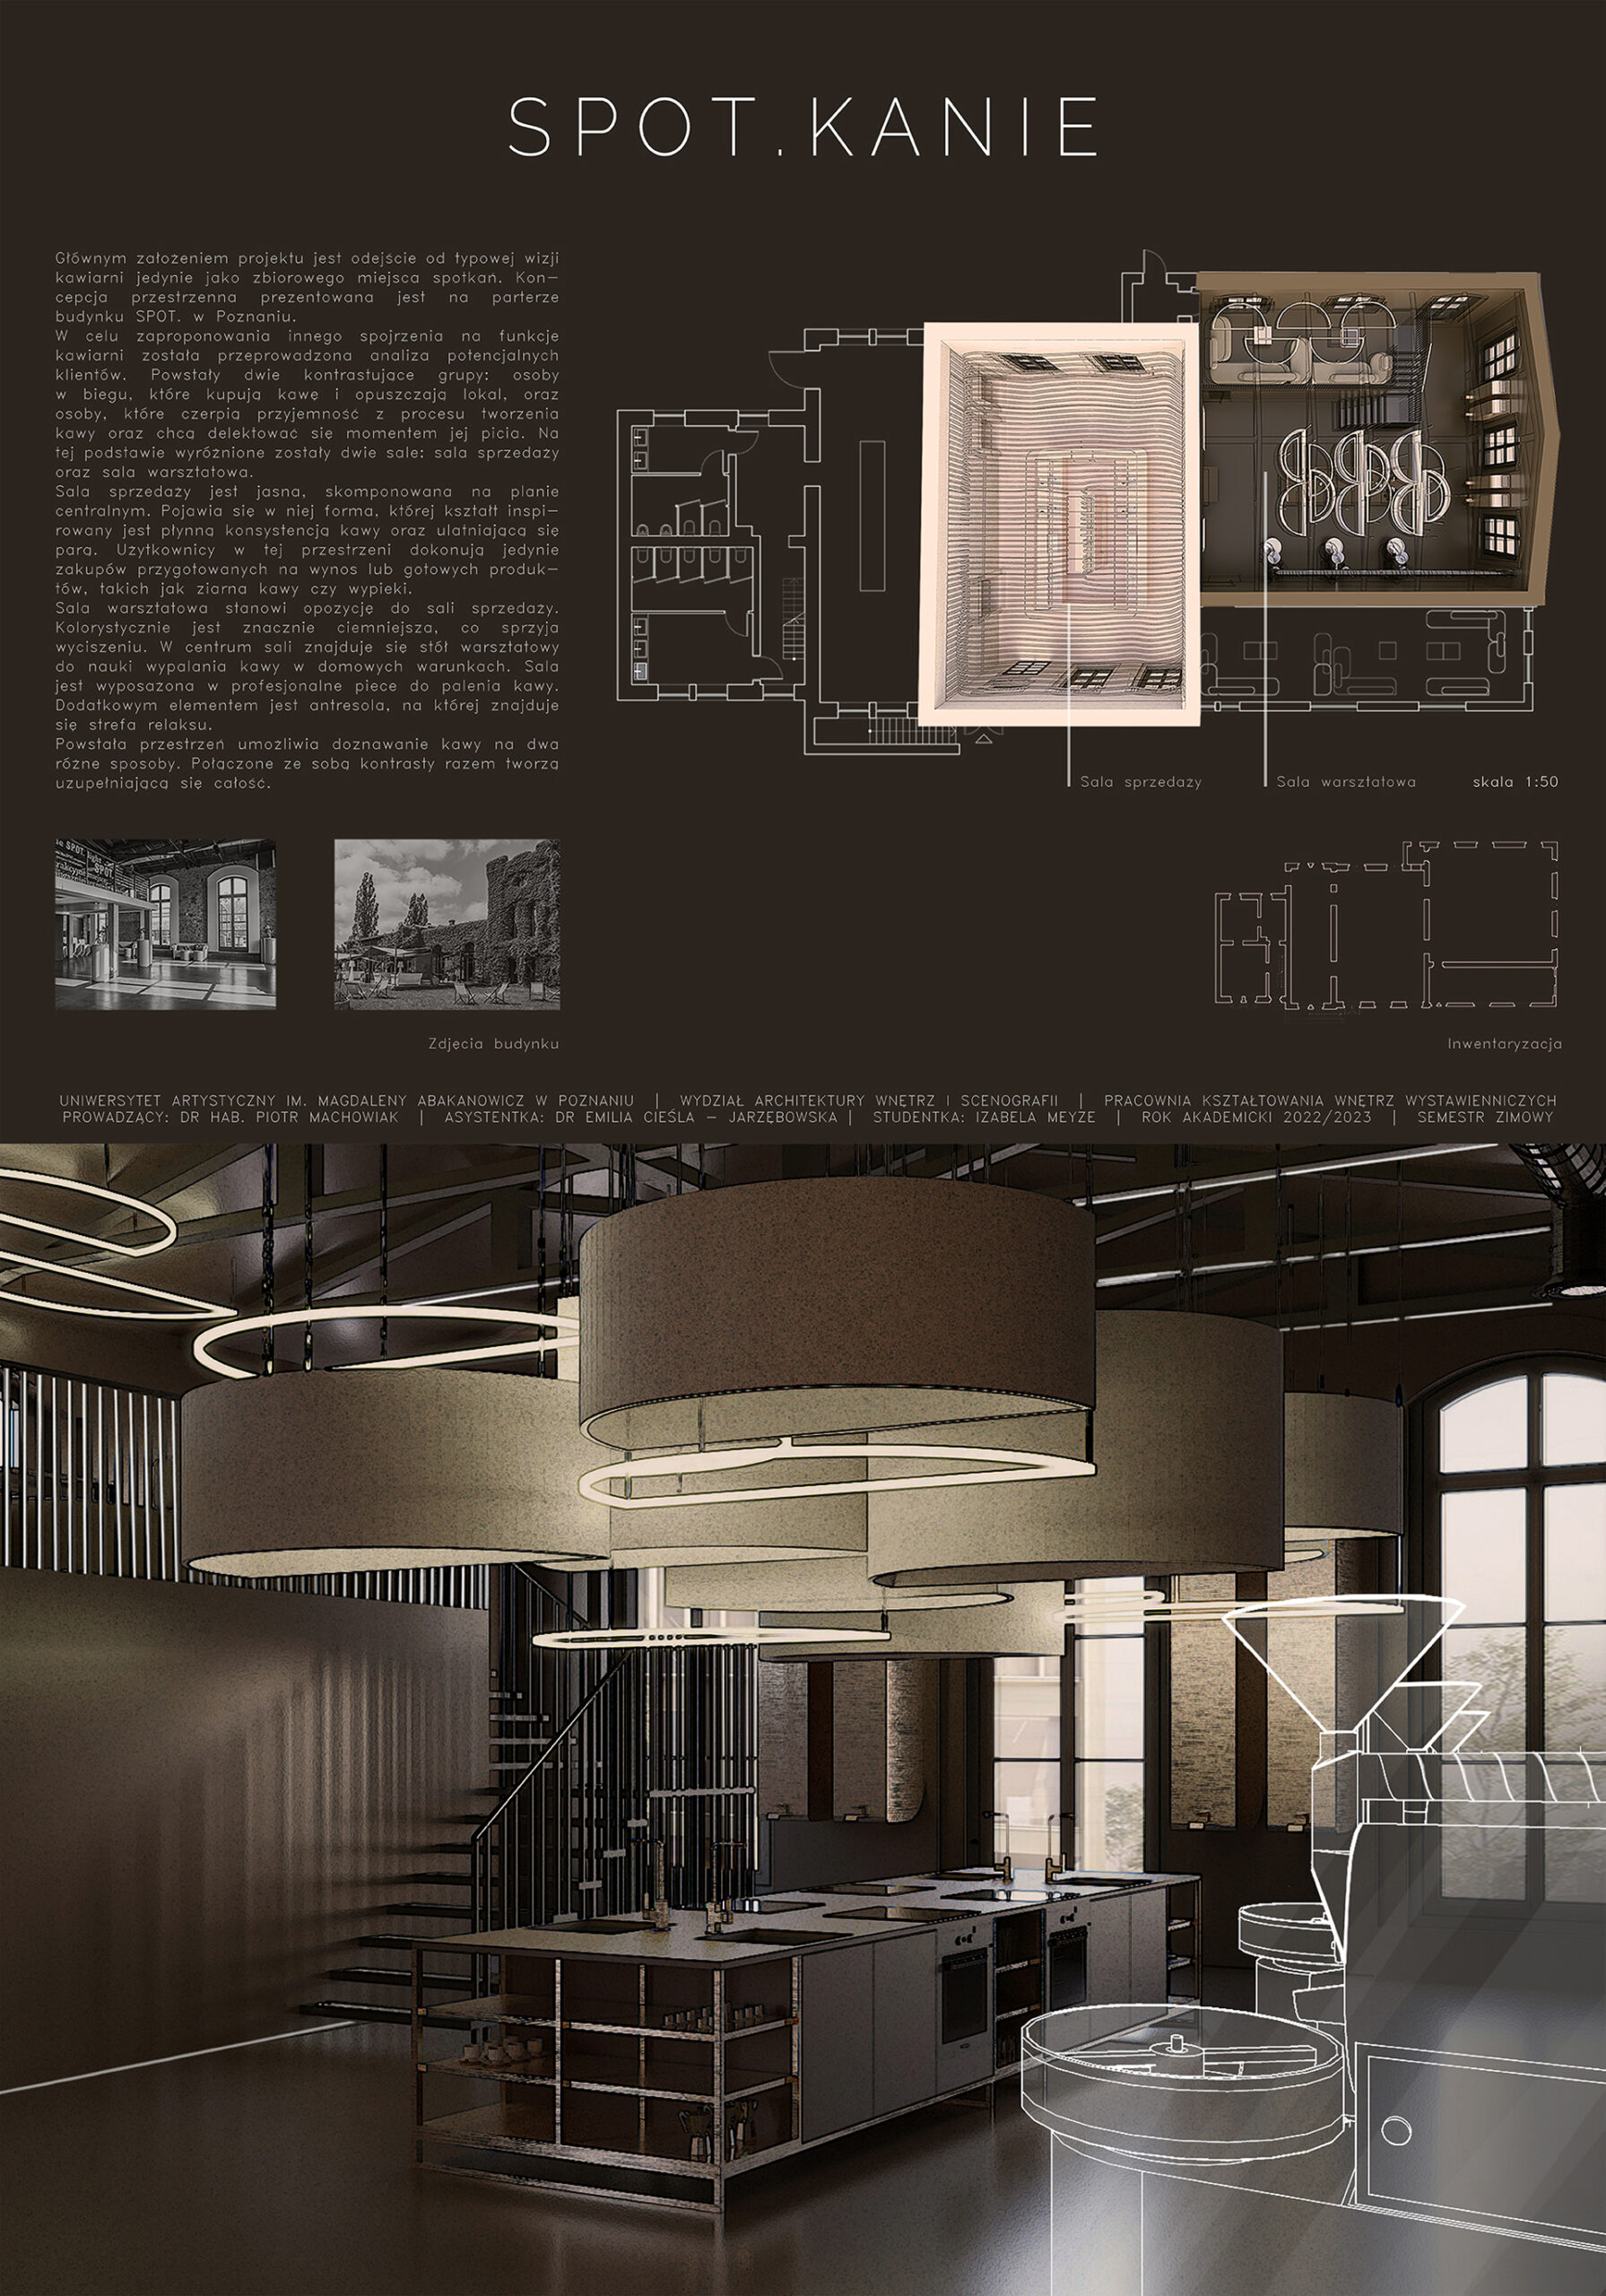 Plansza przedstawia od góry opis projektu i zdjecia przestrzeni zastanej obok trójwymiarowy rzut projektowanej przestrzeni. Poniżej ilustracja na przestrzeń roboczą, z maszynami do mielenia kawy. 